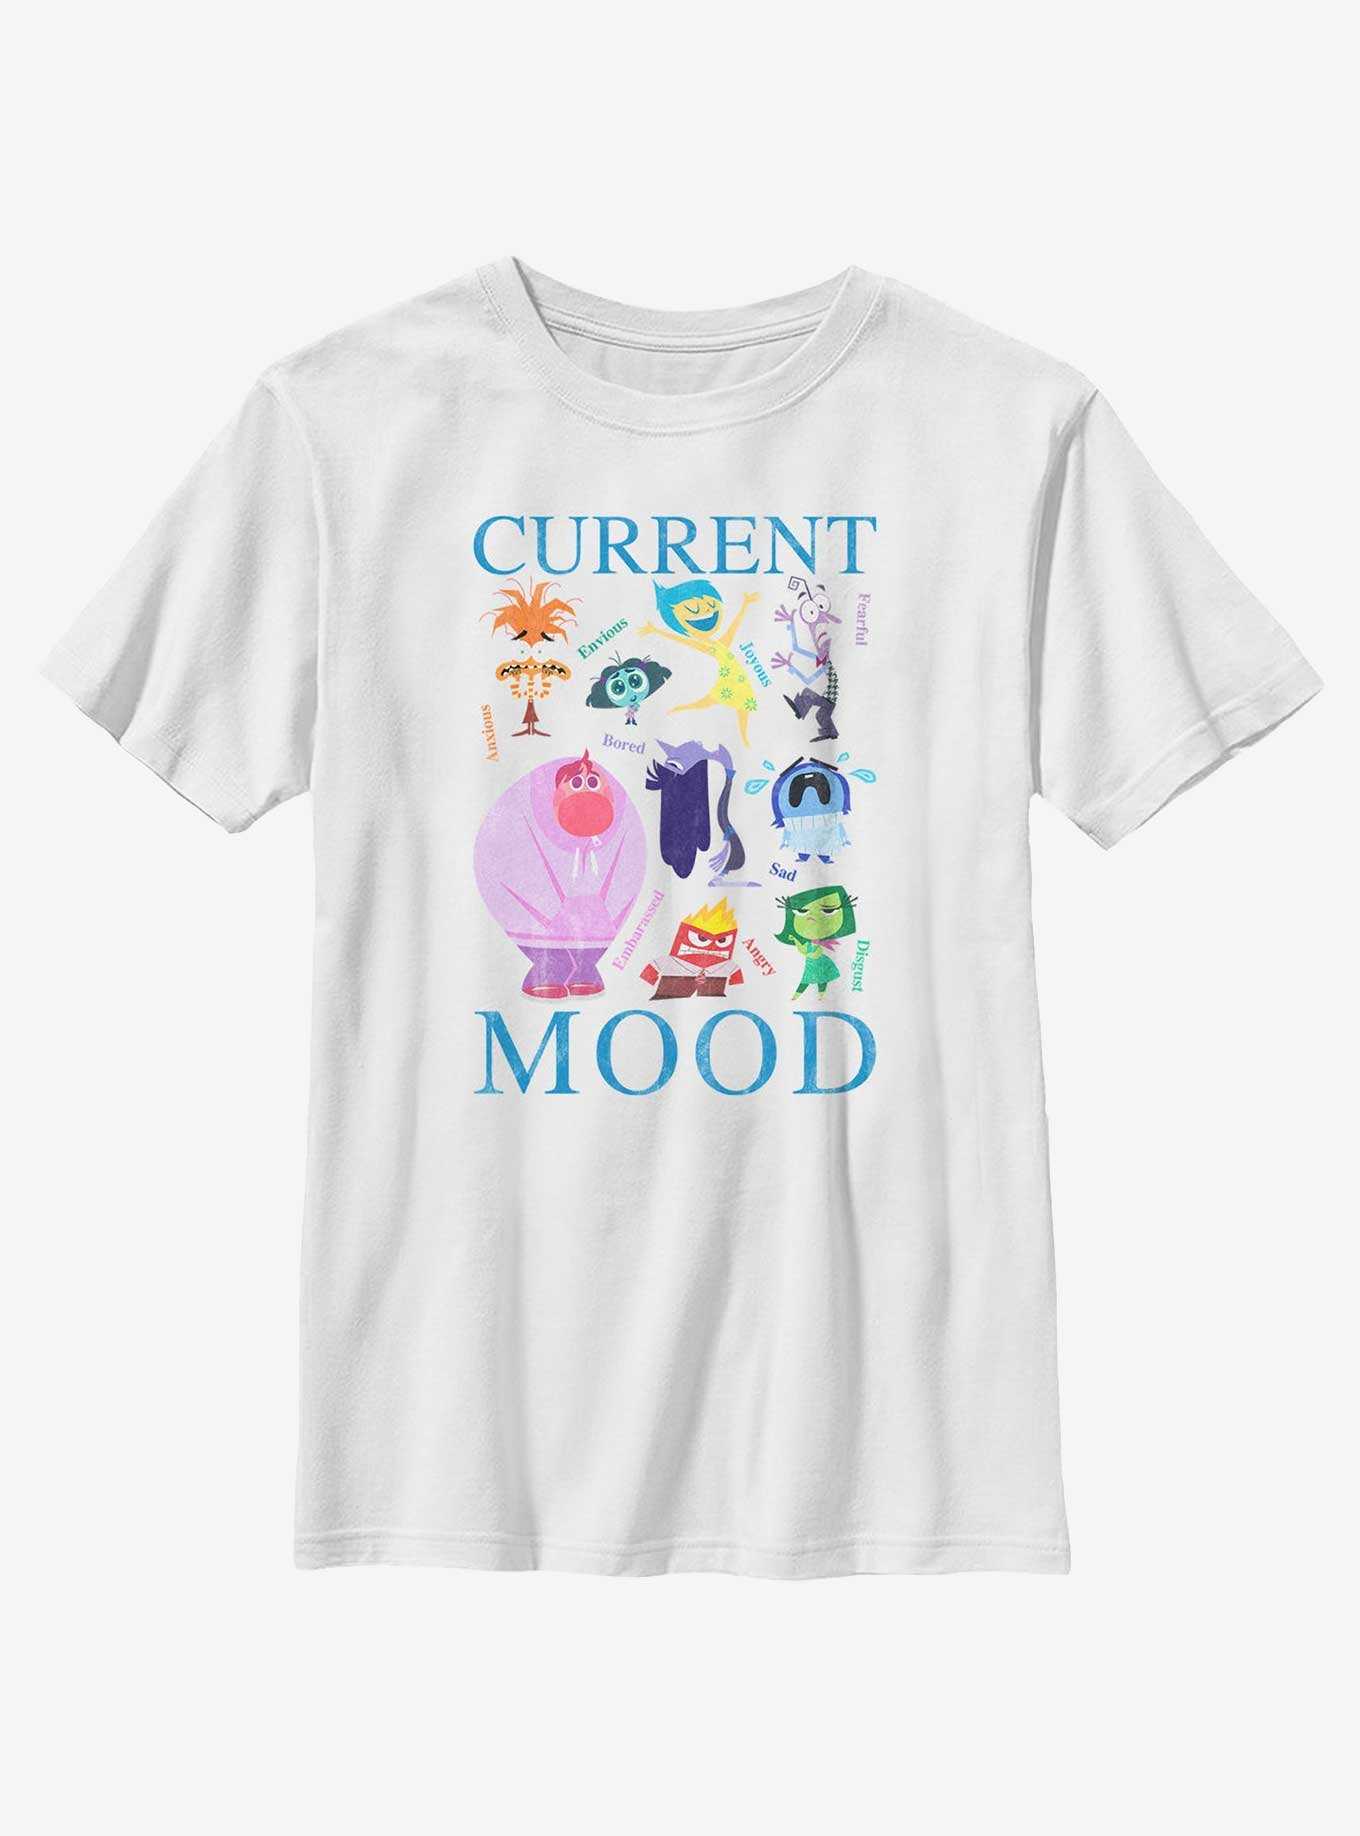 Disney Pixar Inside Out 2 Current Mood Youth T-Shirt, , hi-res